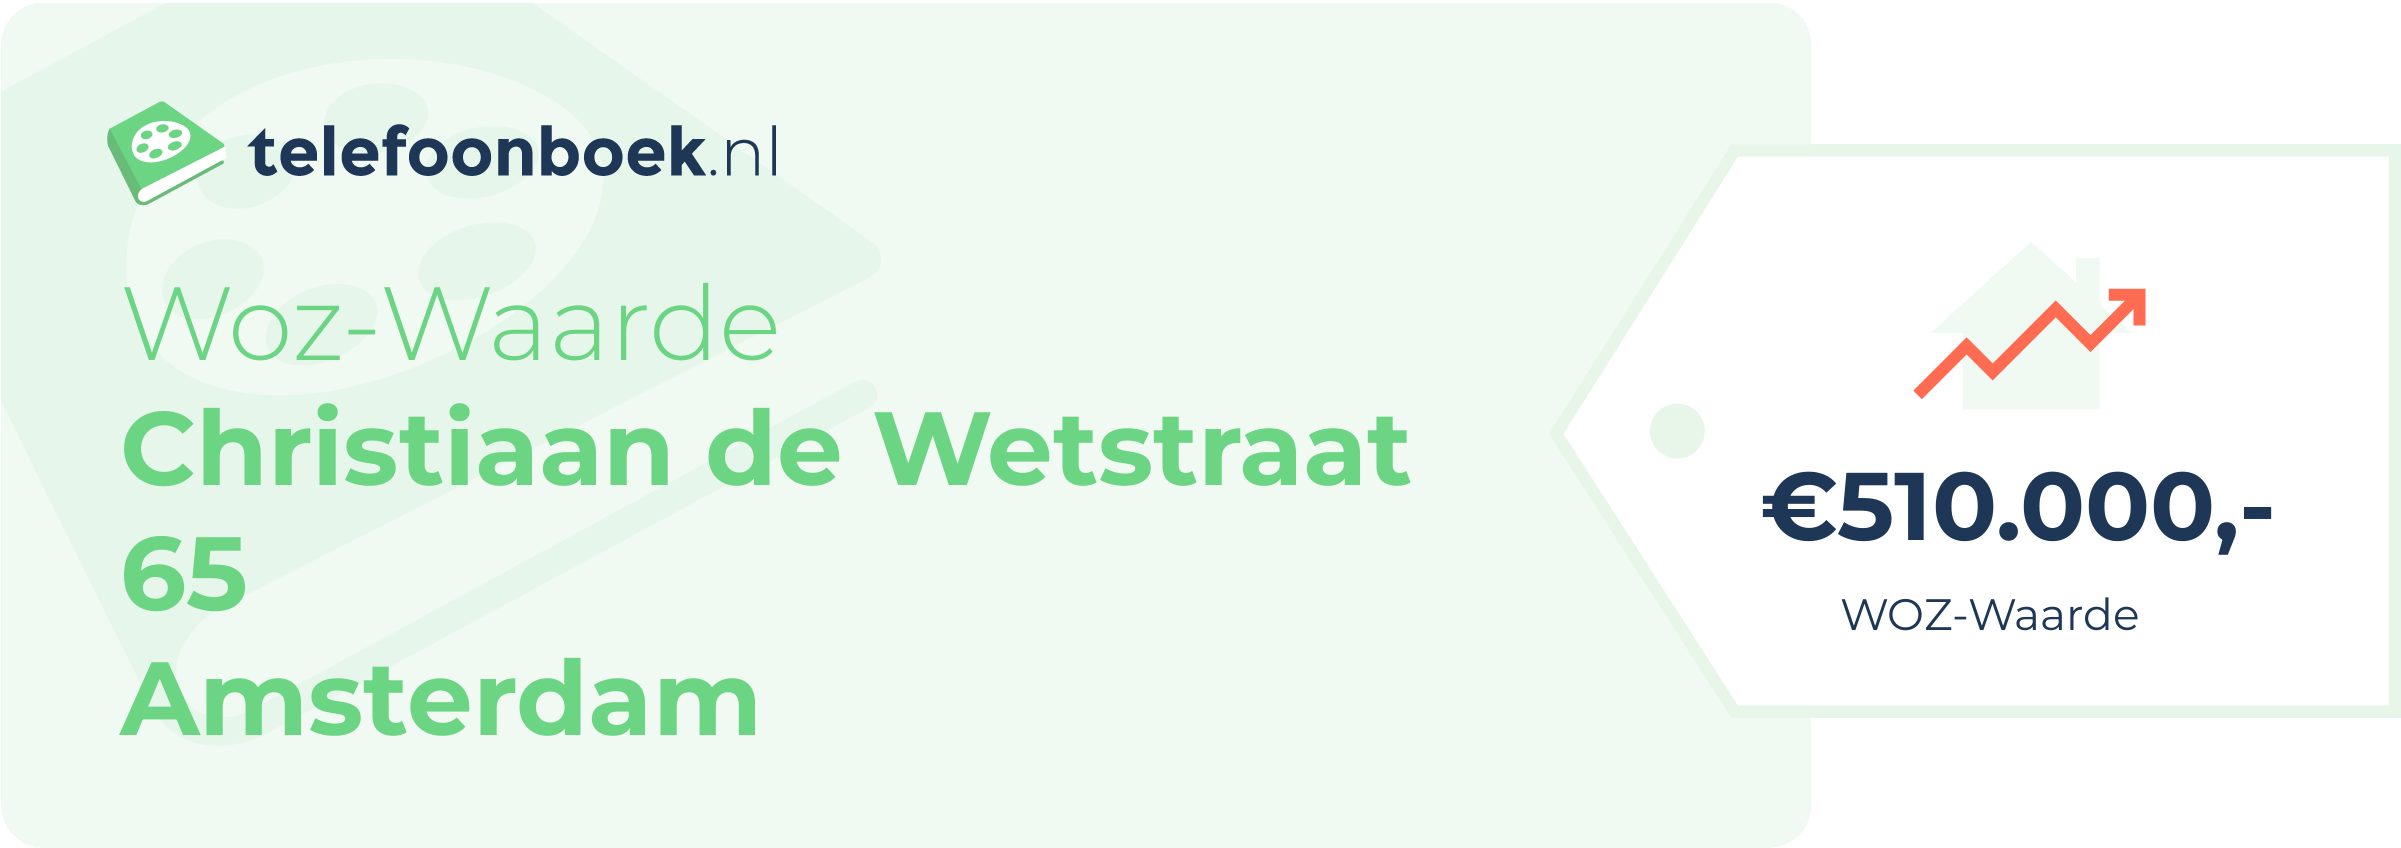 WOZ-waarde Christiaan De Wetstraat 65 Amsterdam